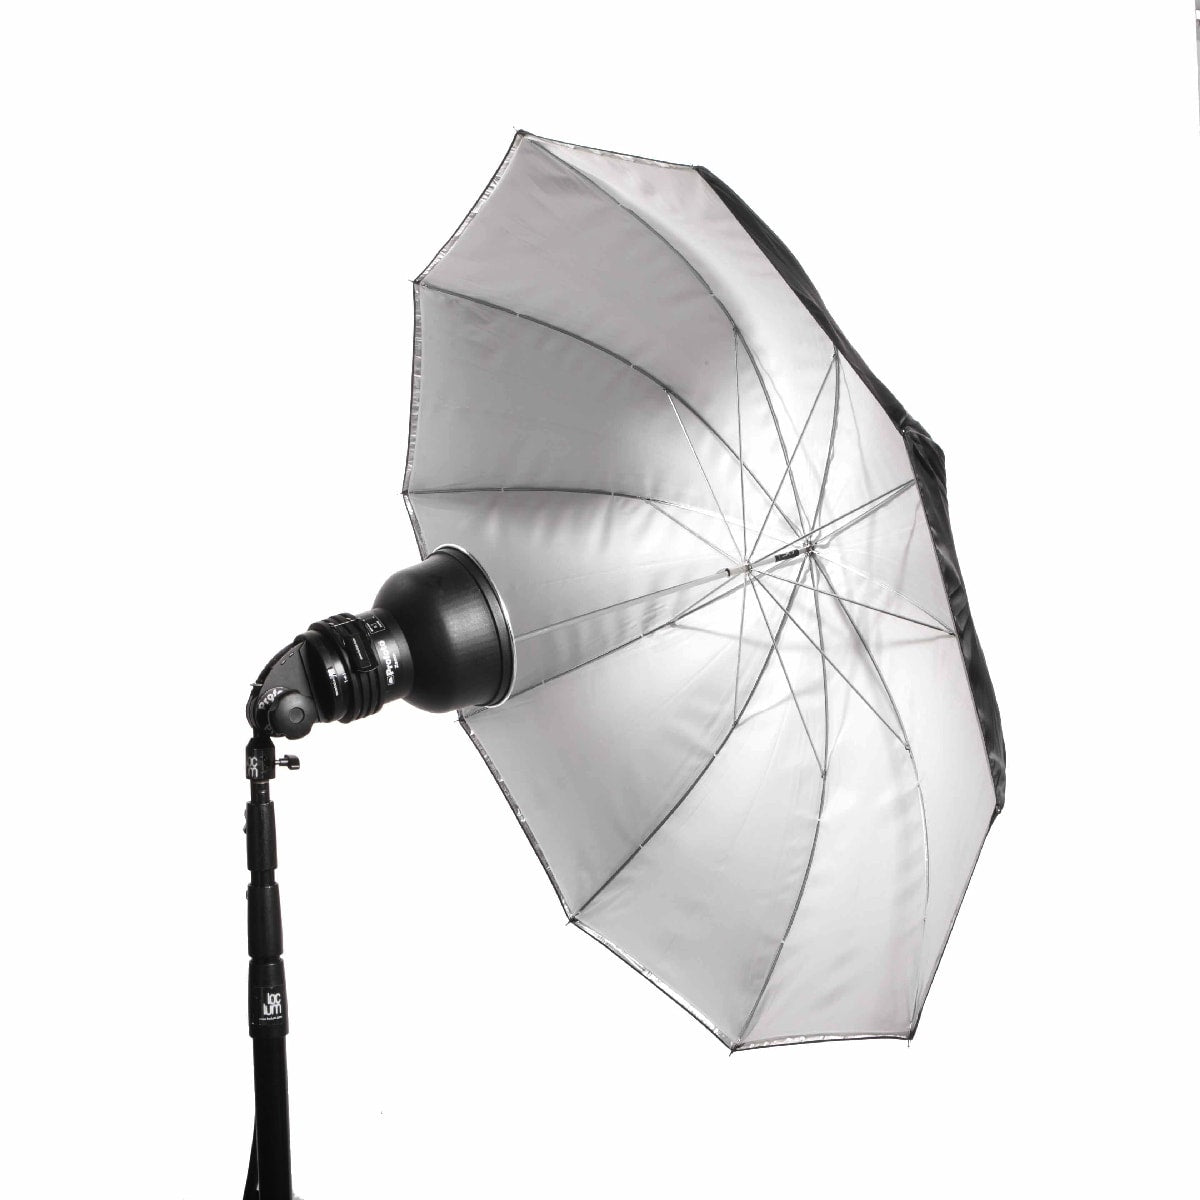  Umbrella white/translucent, 115 cm / 3.7'